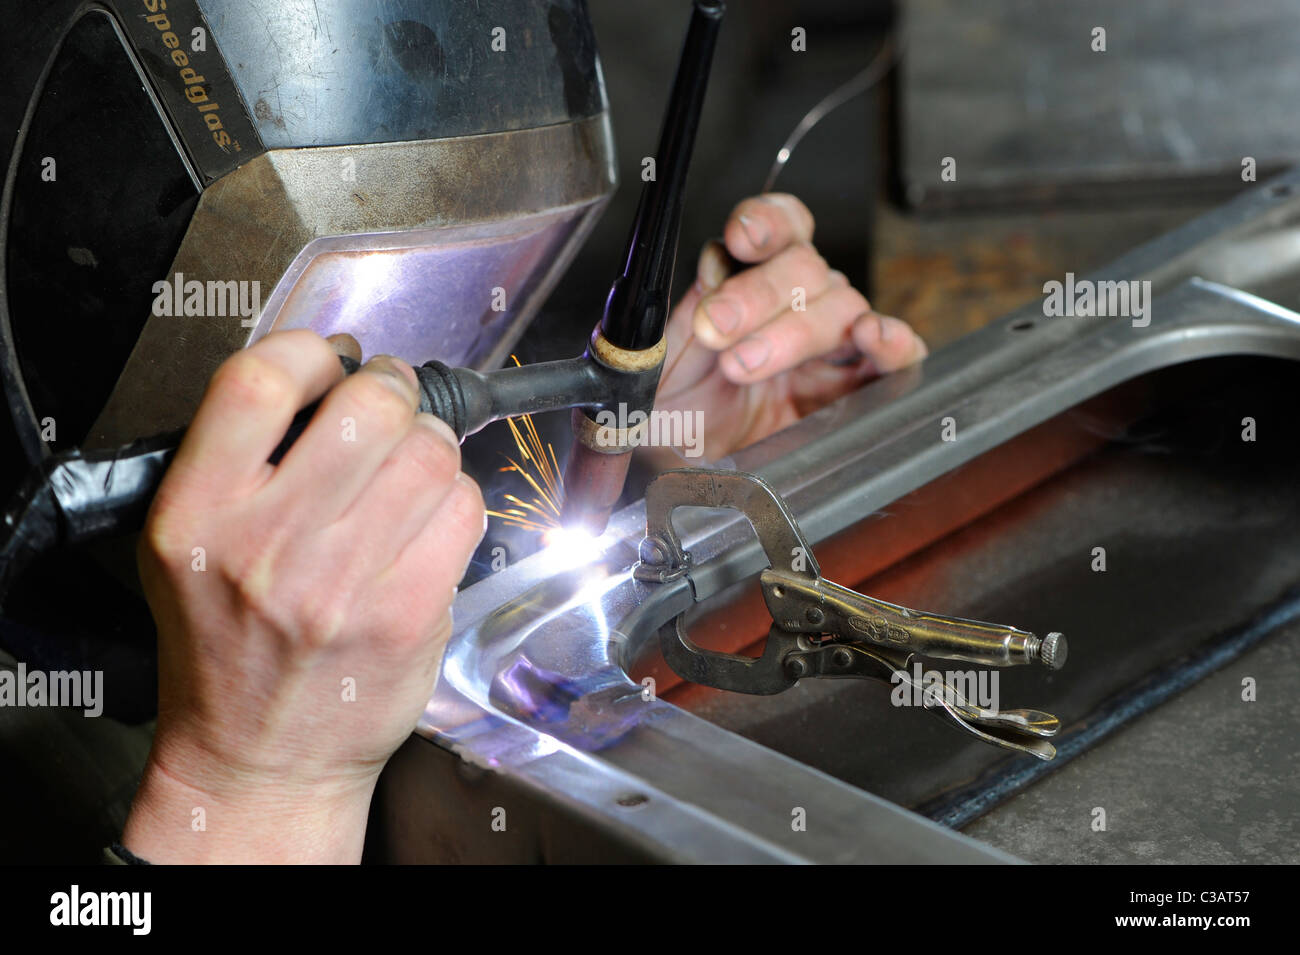 Un esperto lavoratore di metallo a lavorazione dei metalli, mediante saldatura TIG metodo per effettuare una riparazione su un VW camper porta. Foto Stock